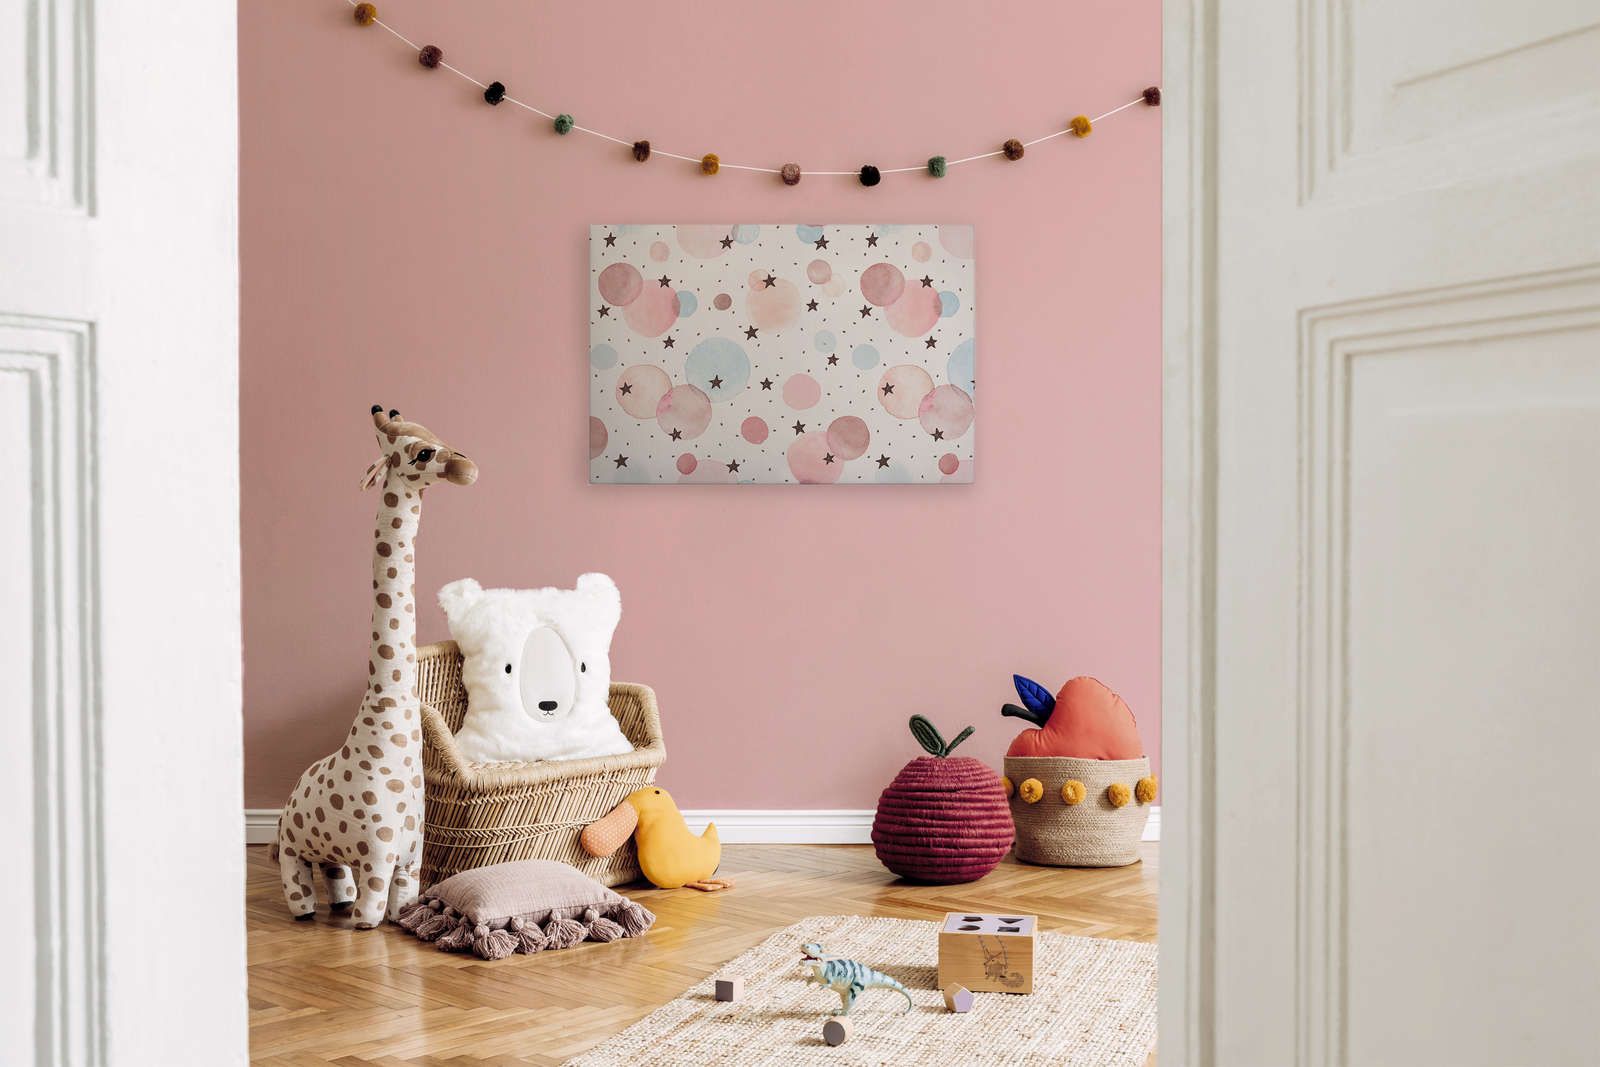             Canvas voor kinderkamer met sterren, stippen en cirkels - 90 cm x 60 cm
        